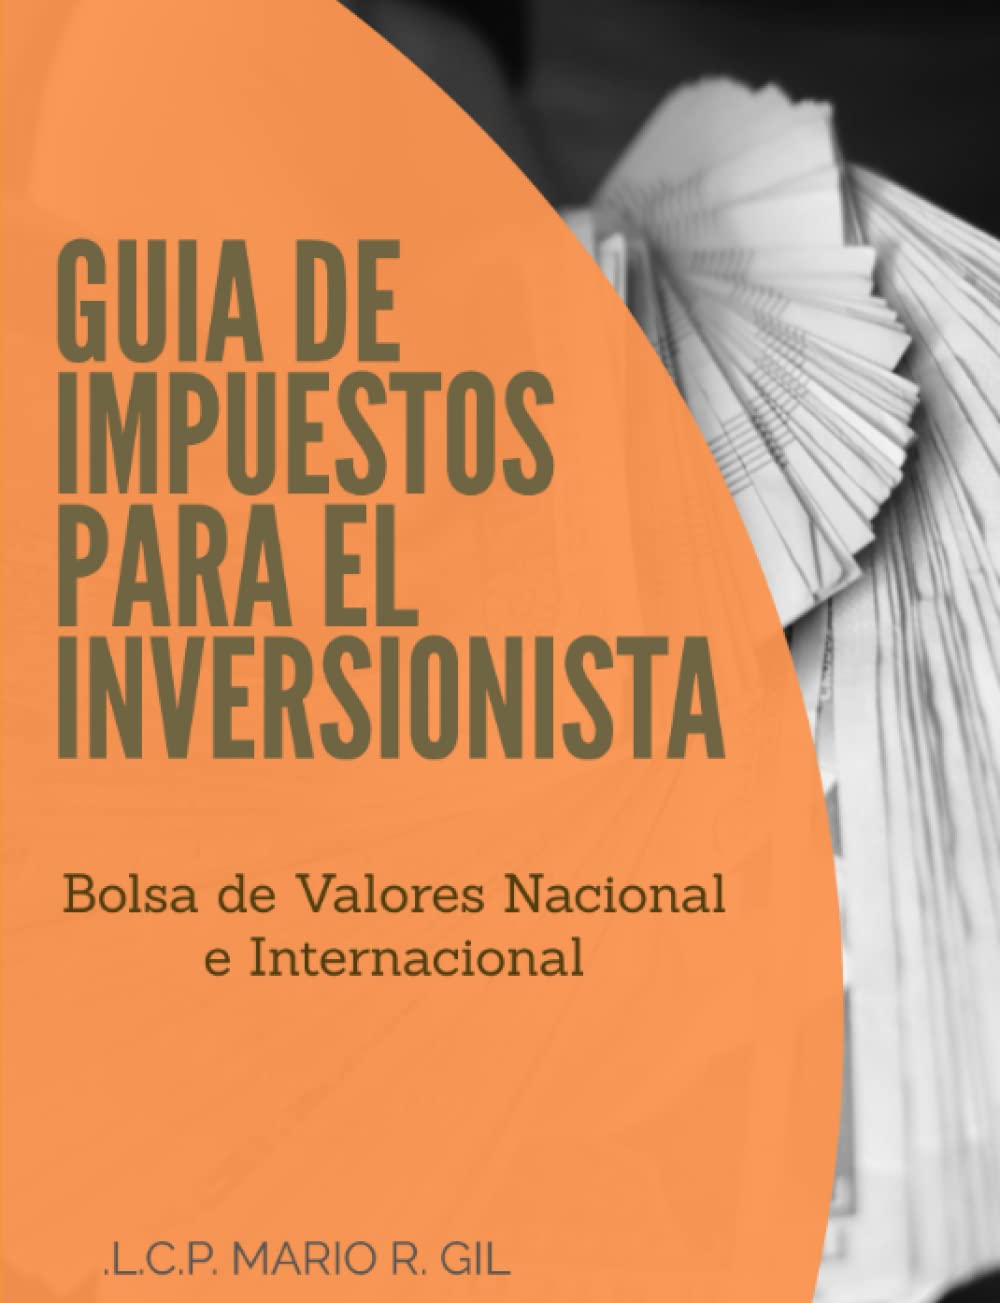 Guia de Impuestos para el Inversionista - Bolsa de Valores Nacional e Internacional (Spanish Edition)